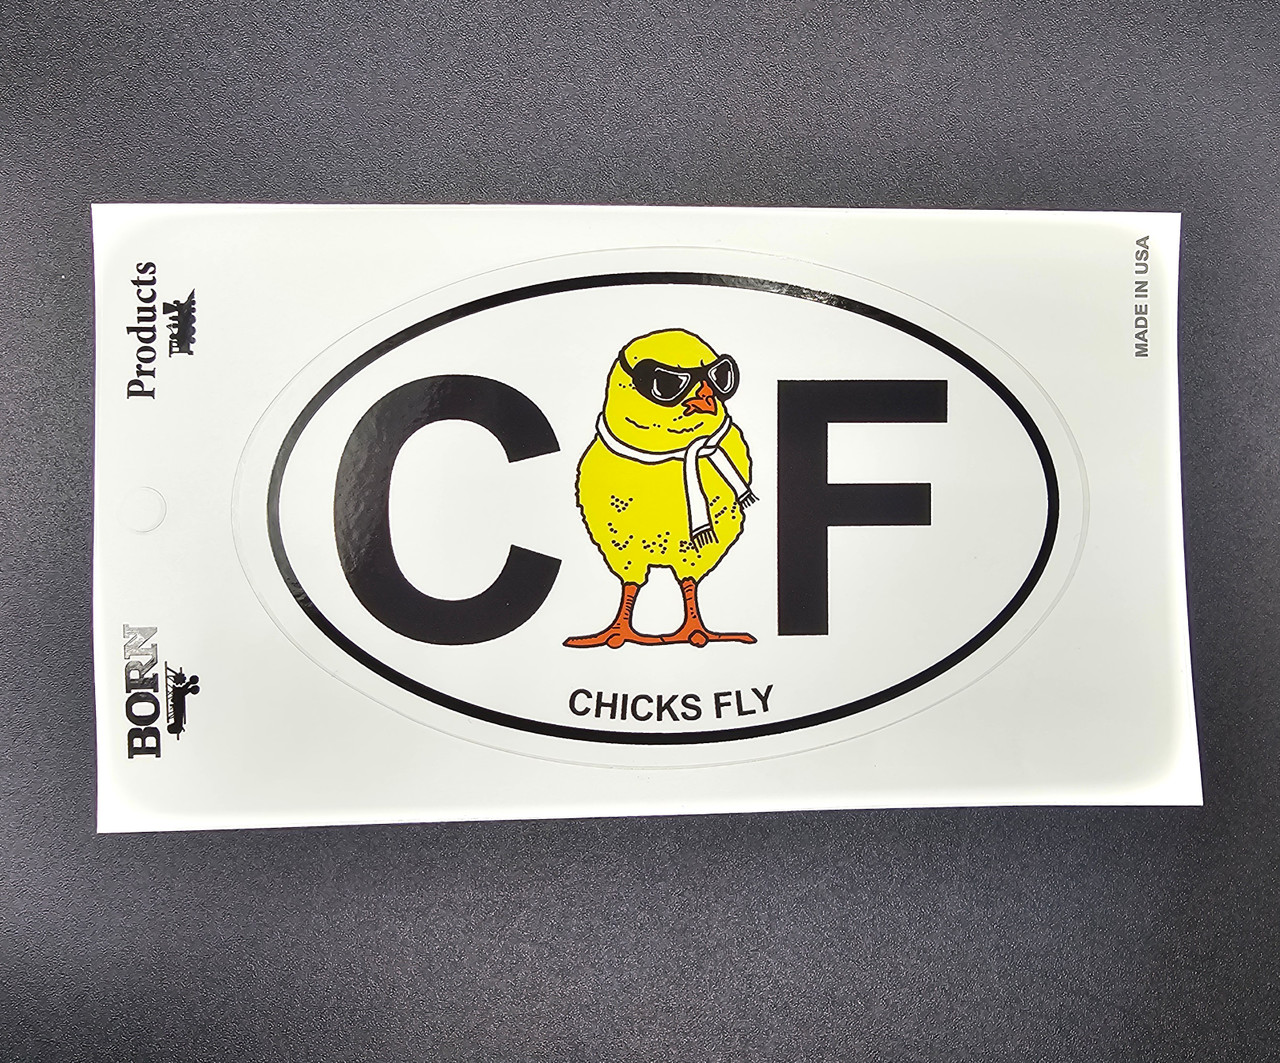 Chicks Fly Sticker